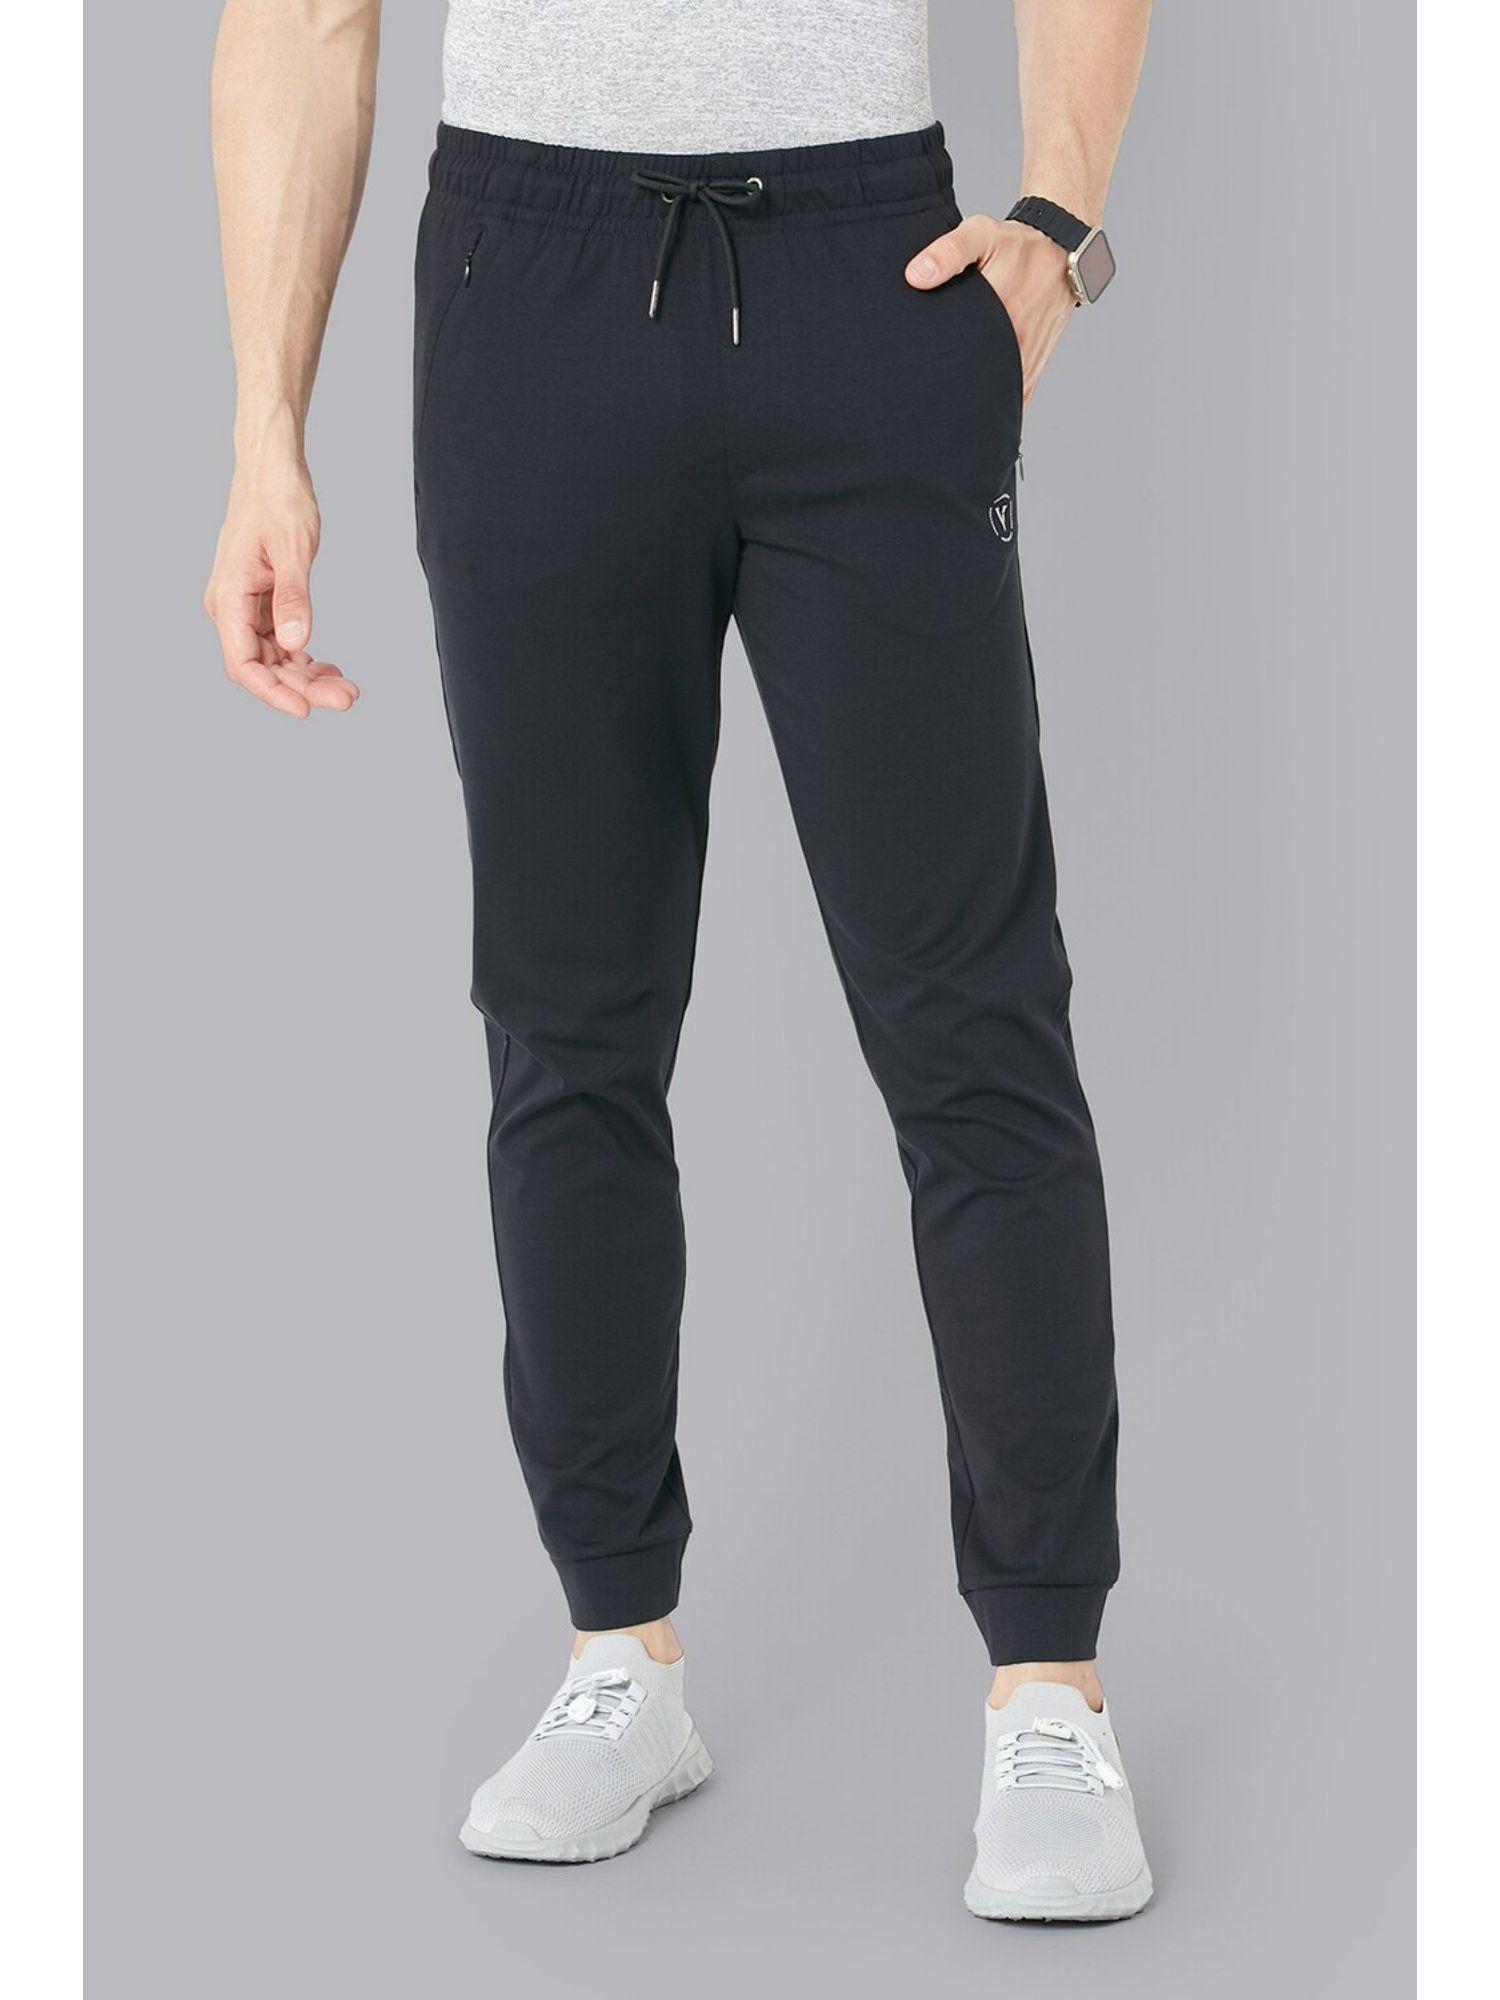 men-grey-solid-casual-jogger-pants